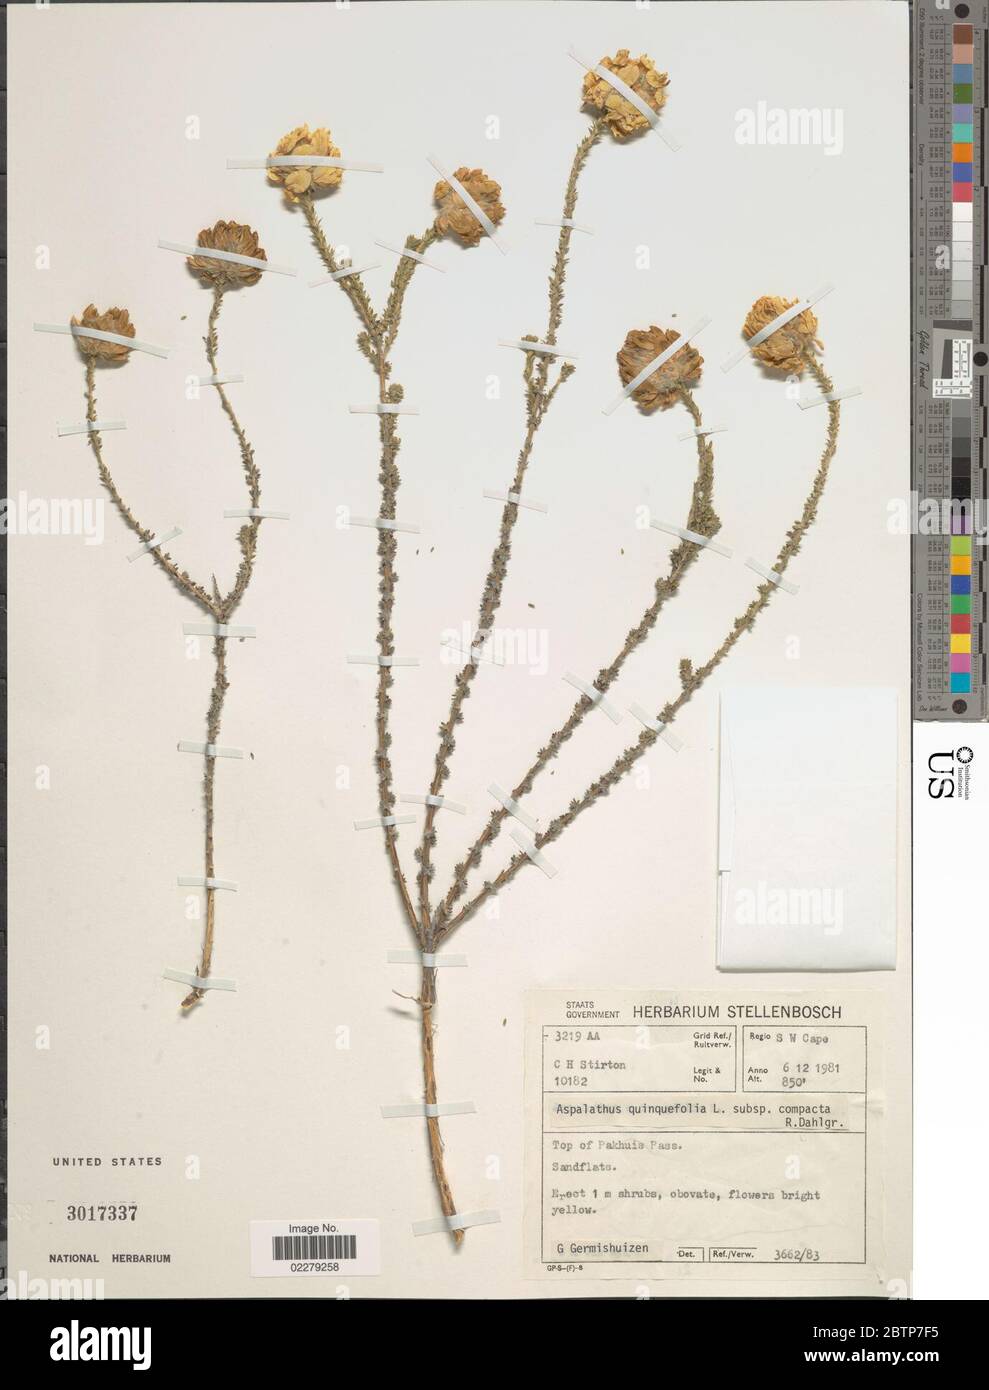 Aspalathus quinquefolia. Stock Photo